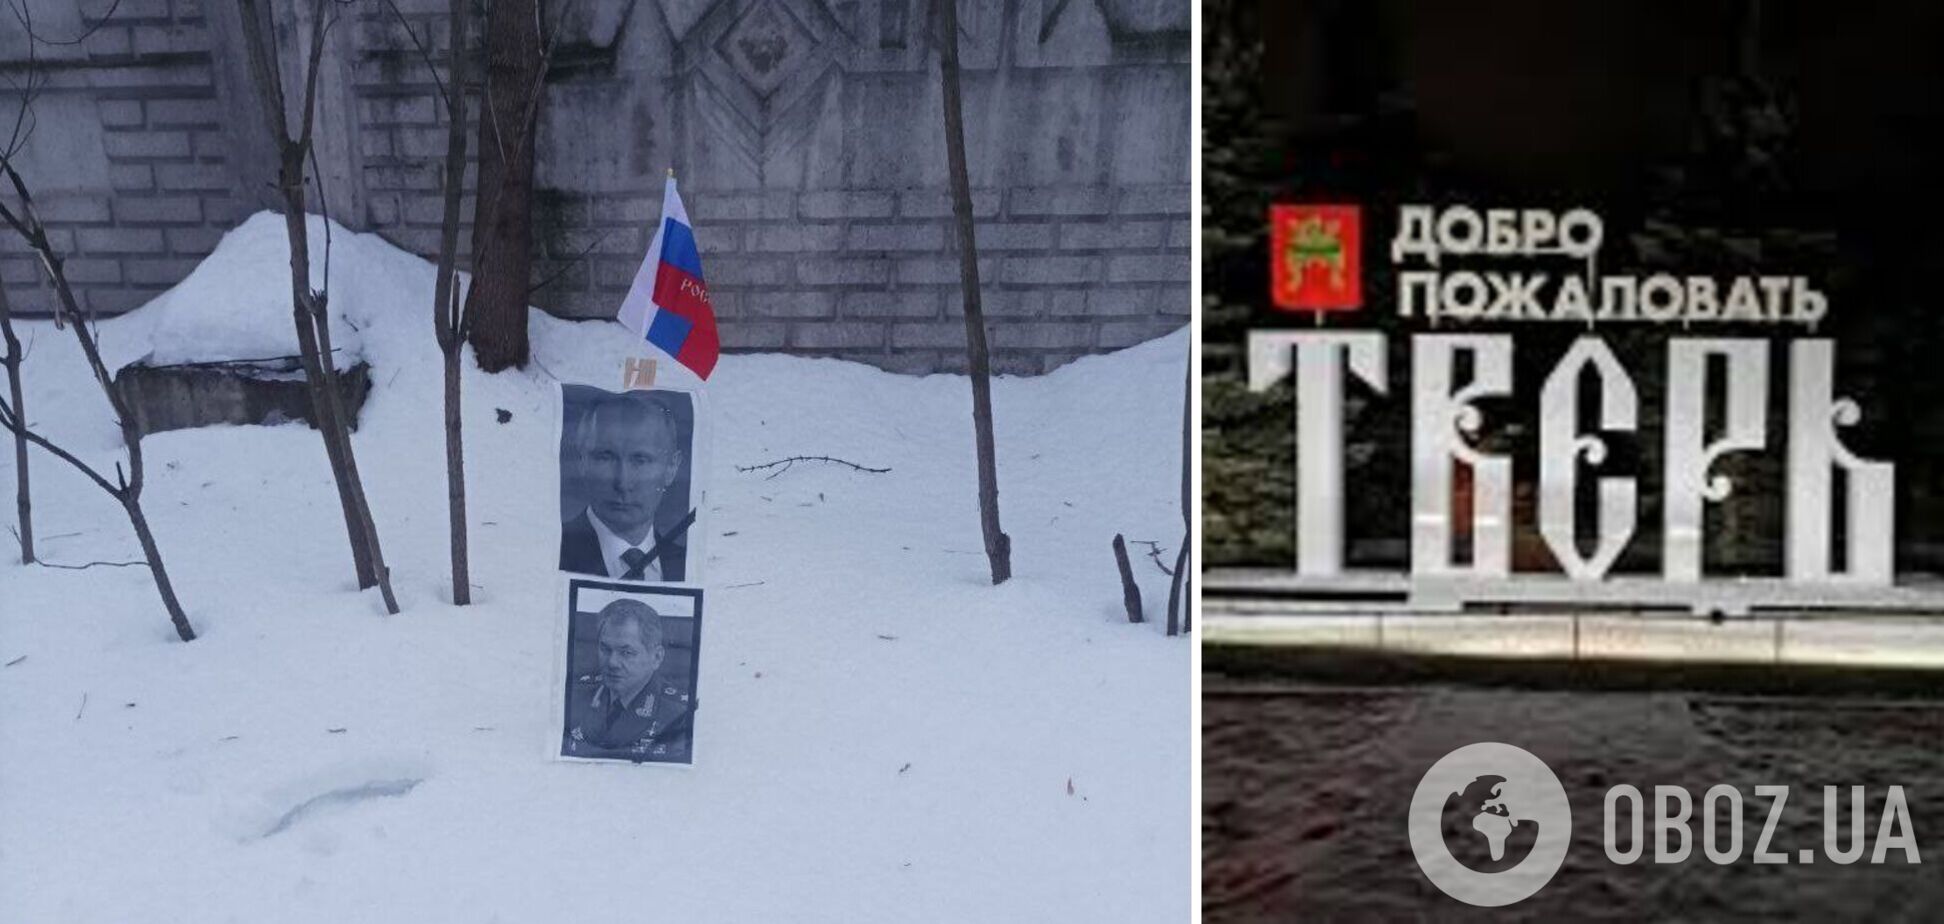 В российской Твери похоронили Путина и Шойгу. Фото смелой акции